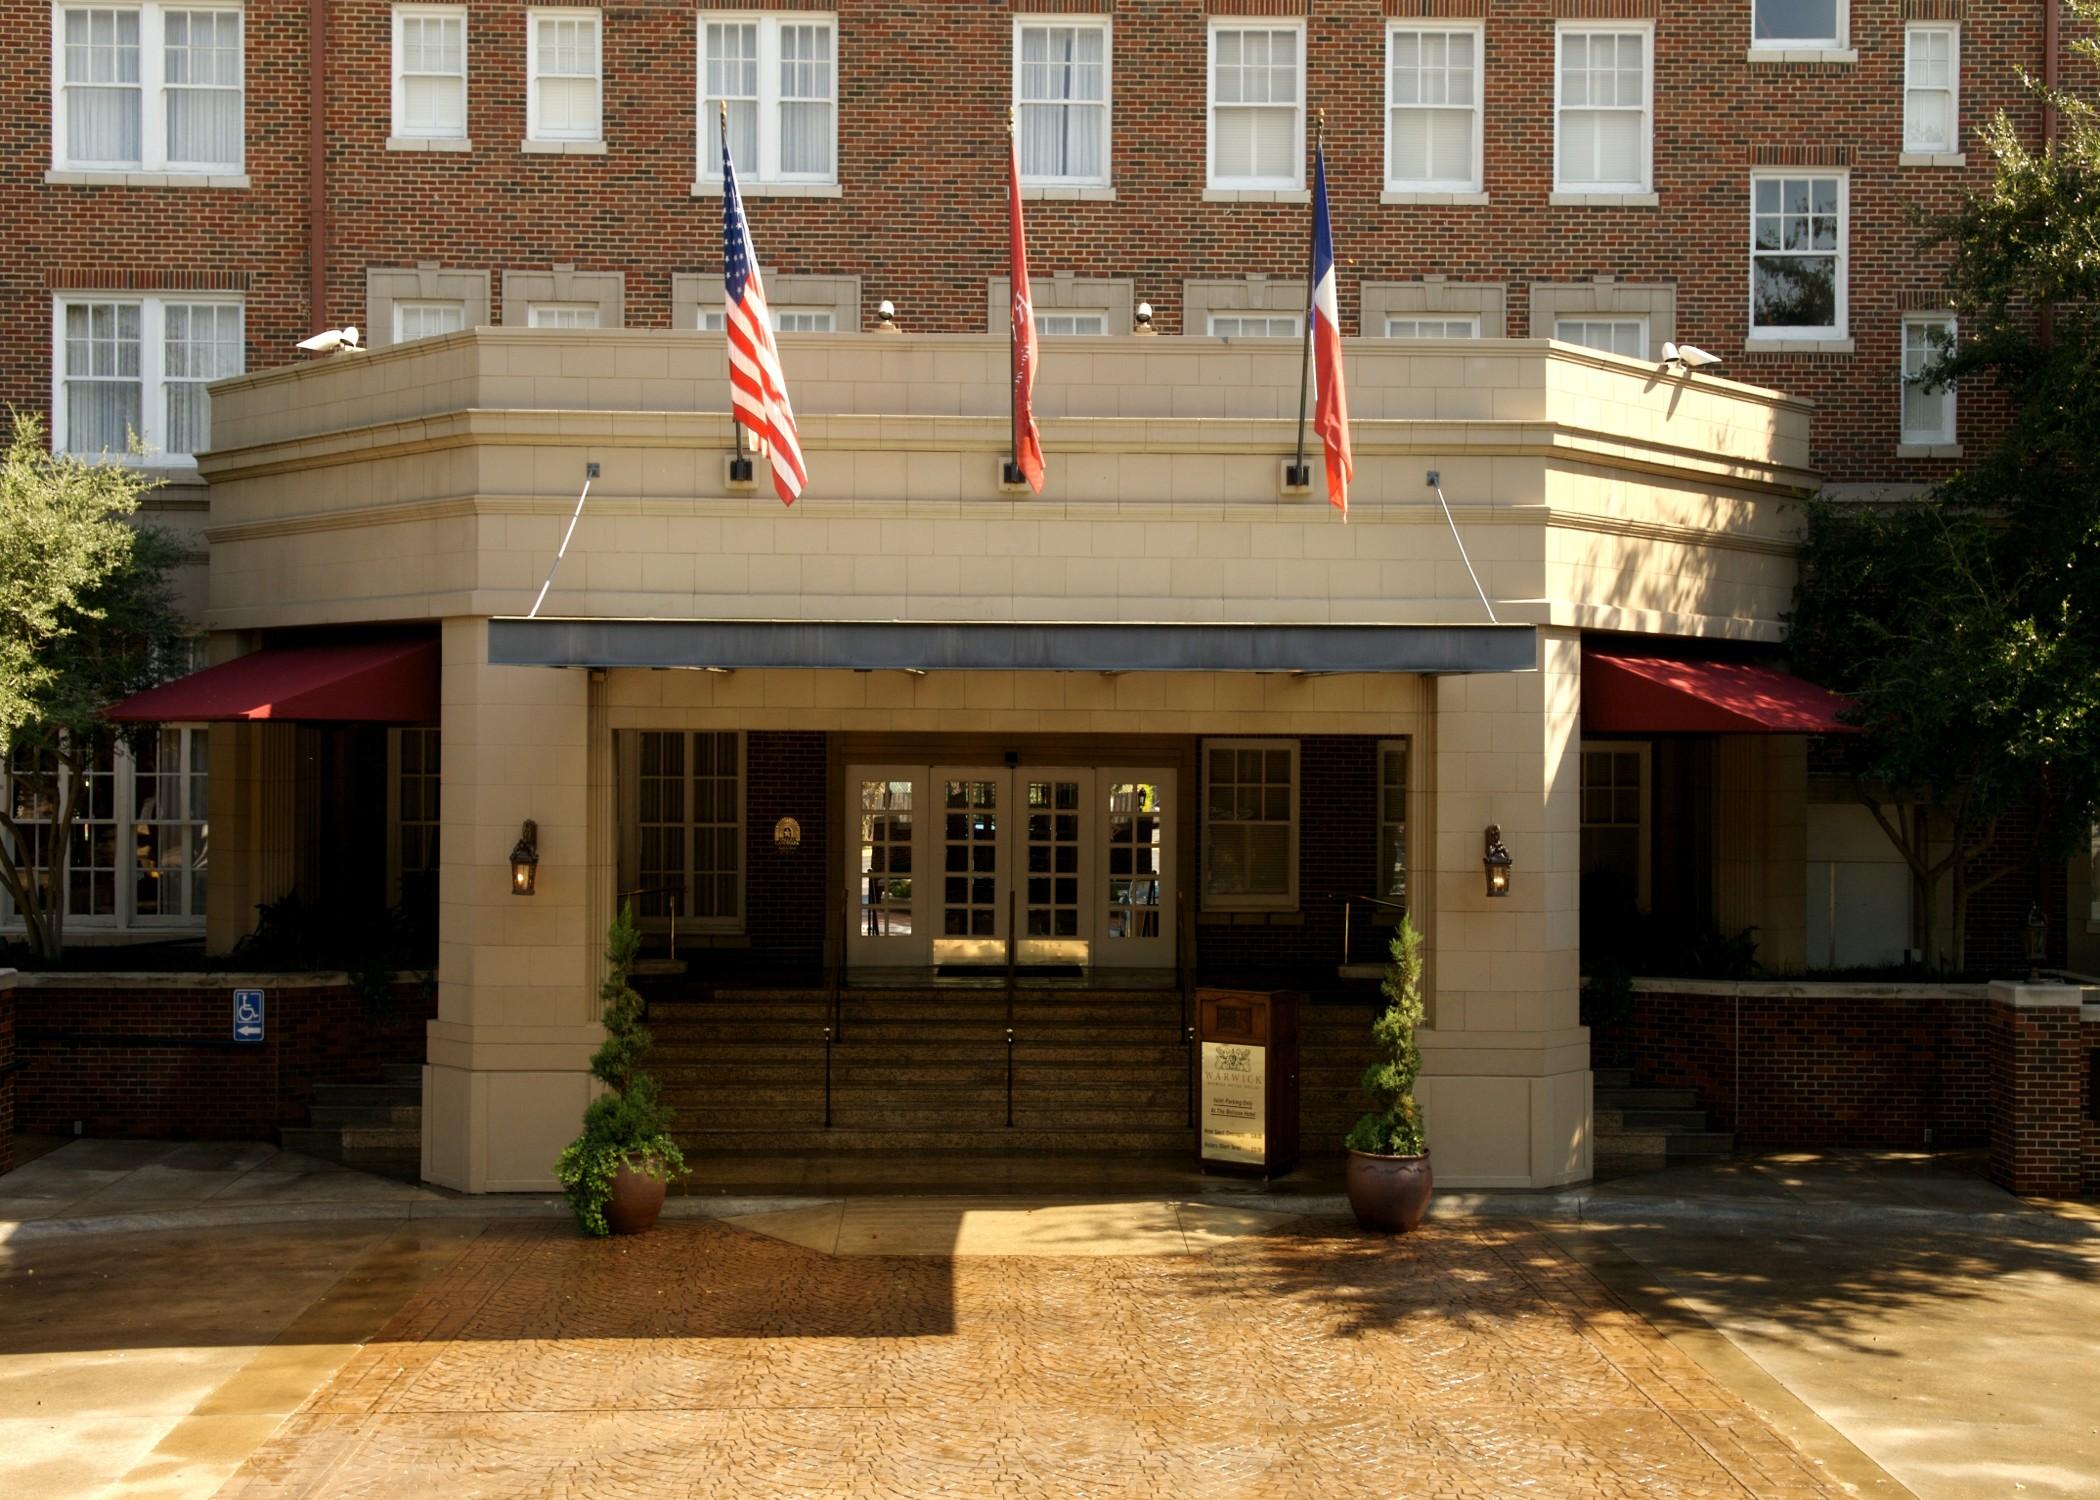 Warwick Melrose Hotel Dallas Zewnętrze zdjęcie